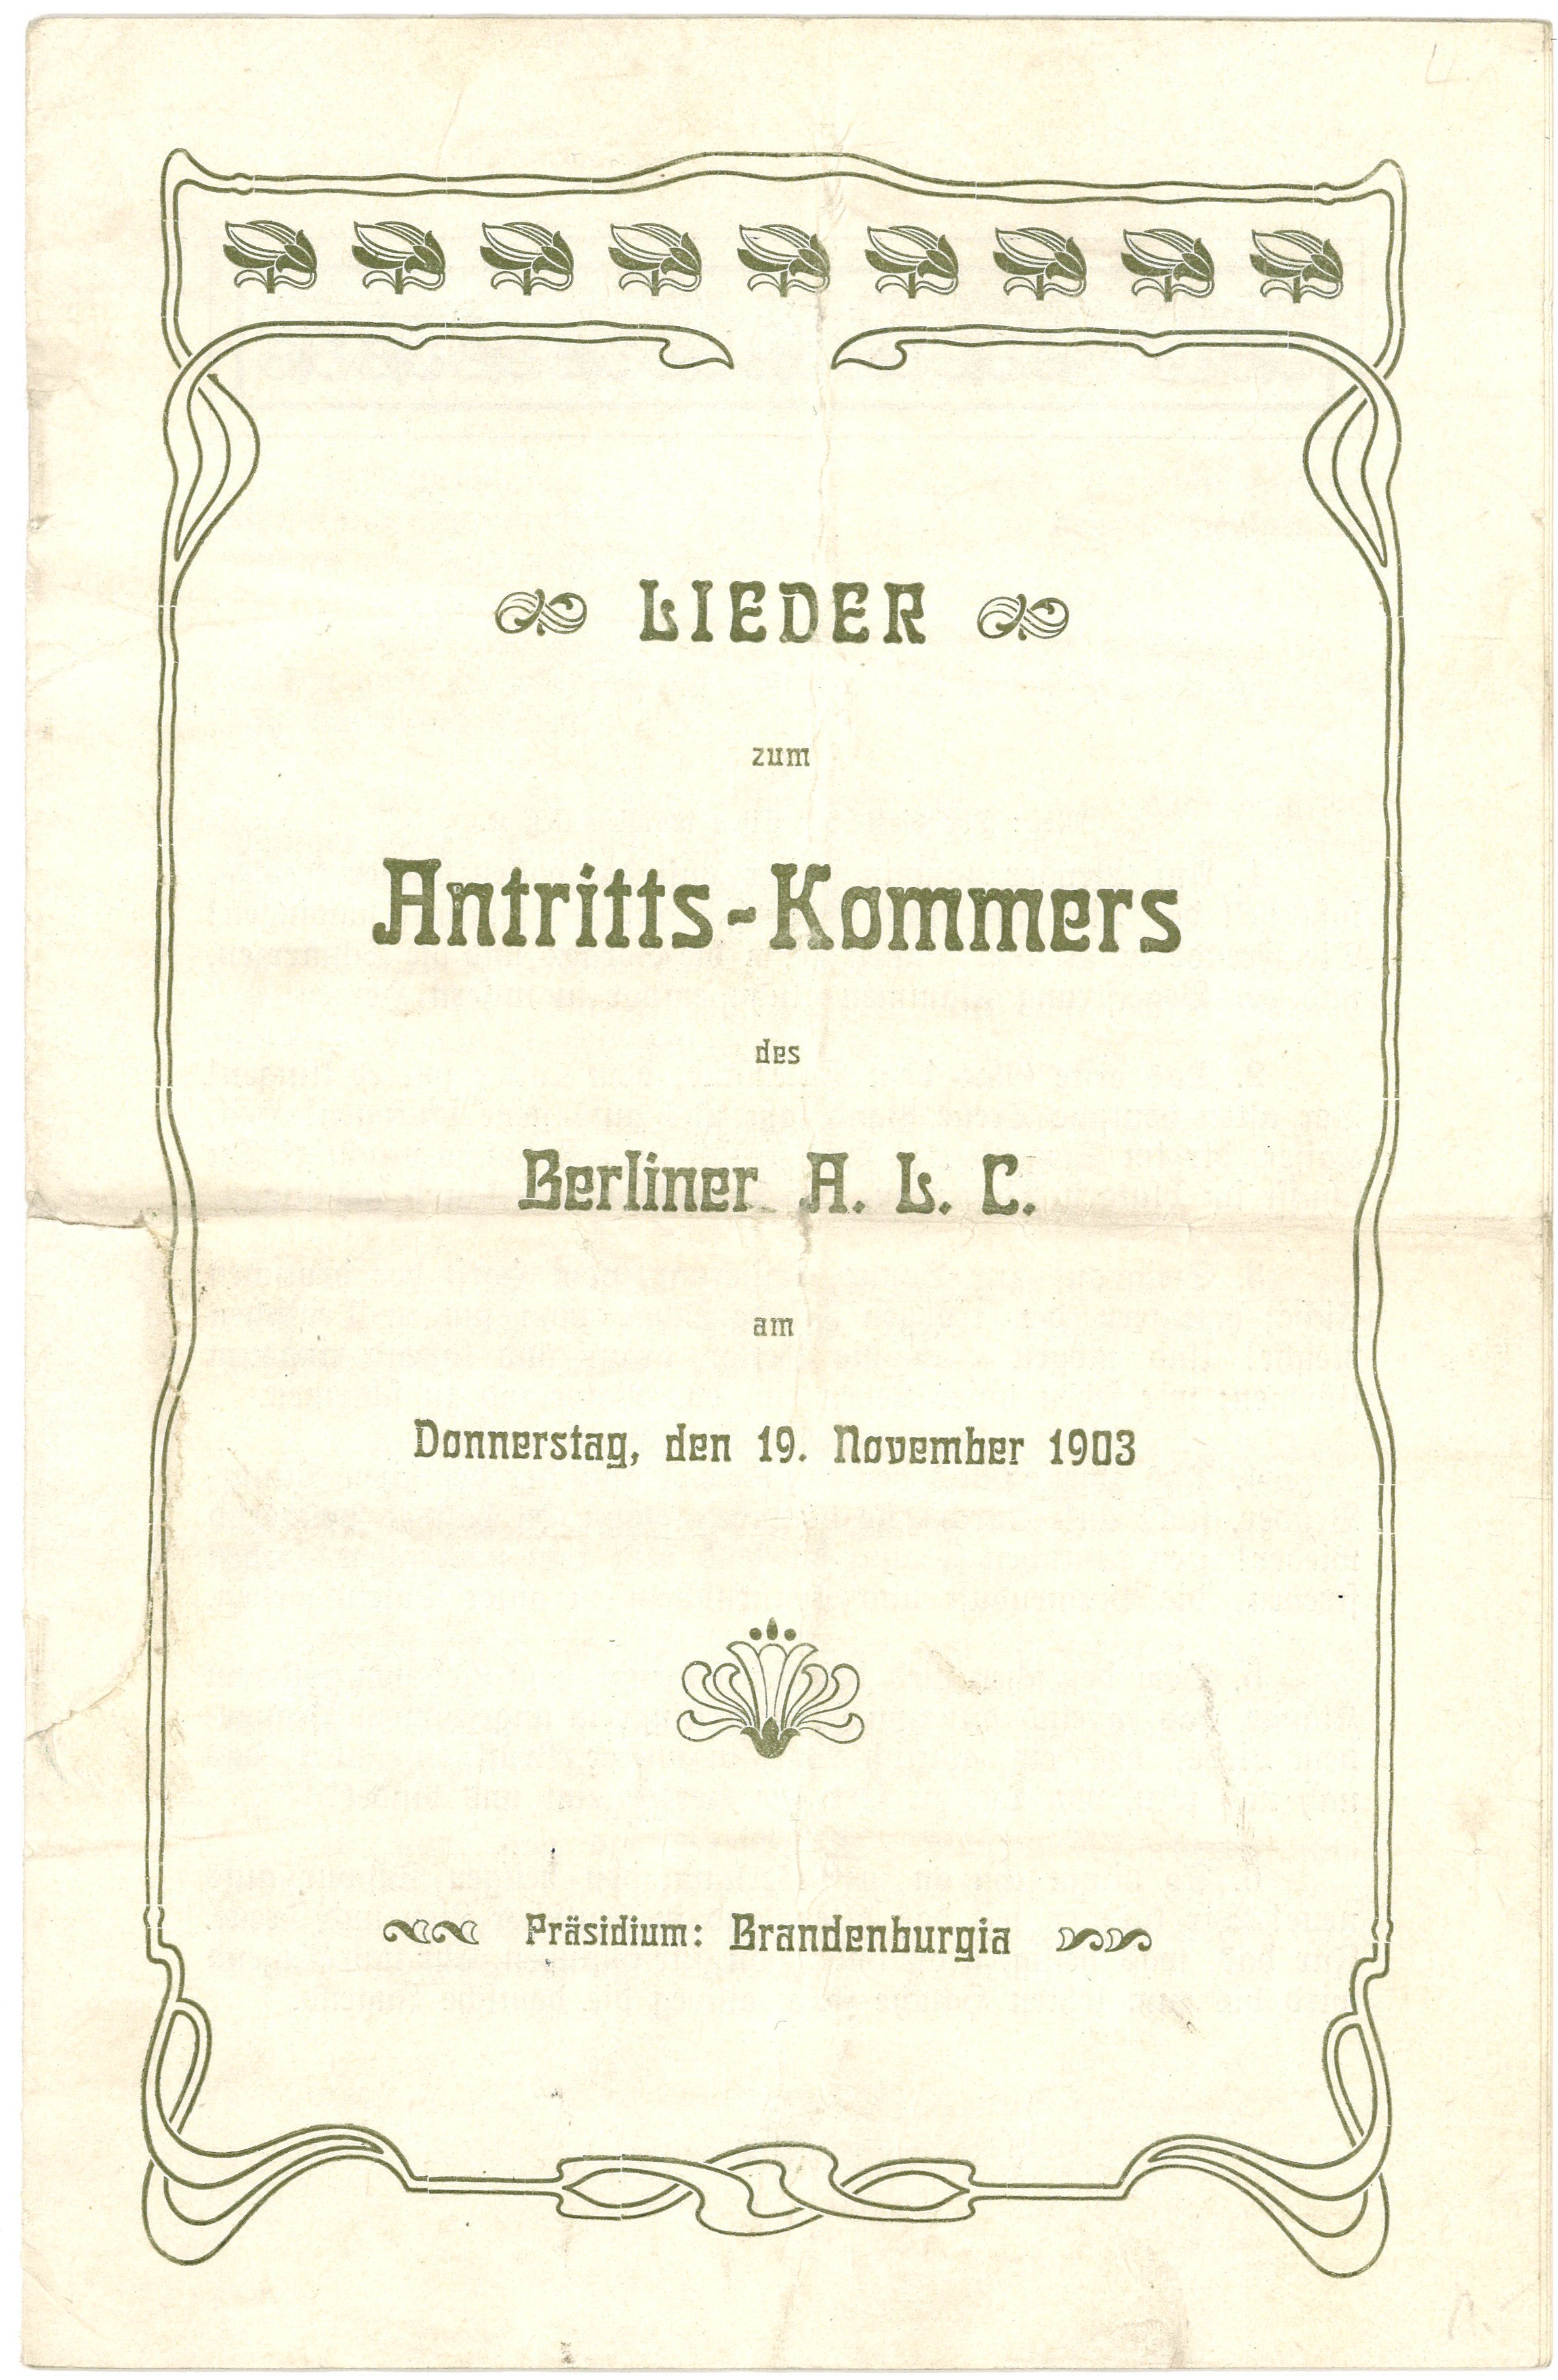 Lieder-Textheft zum Antritts-Kommers des Berliner A. L. C. am 19. November 1903 (Landesgeschichtliche Vereinigung für die Mark Brandenburg e.V., Archiv CC BY)